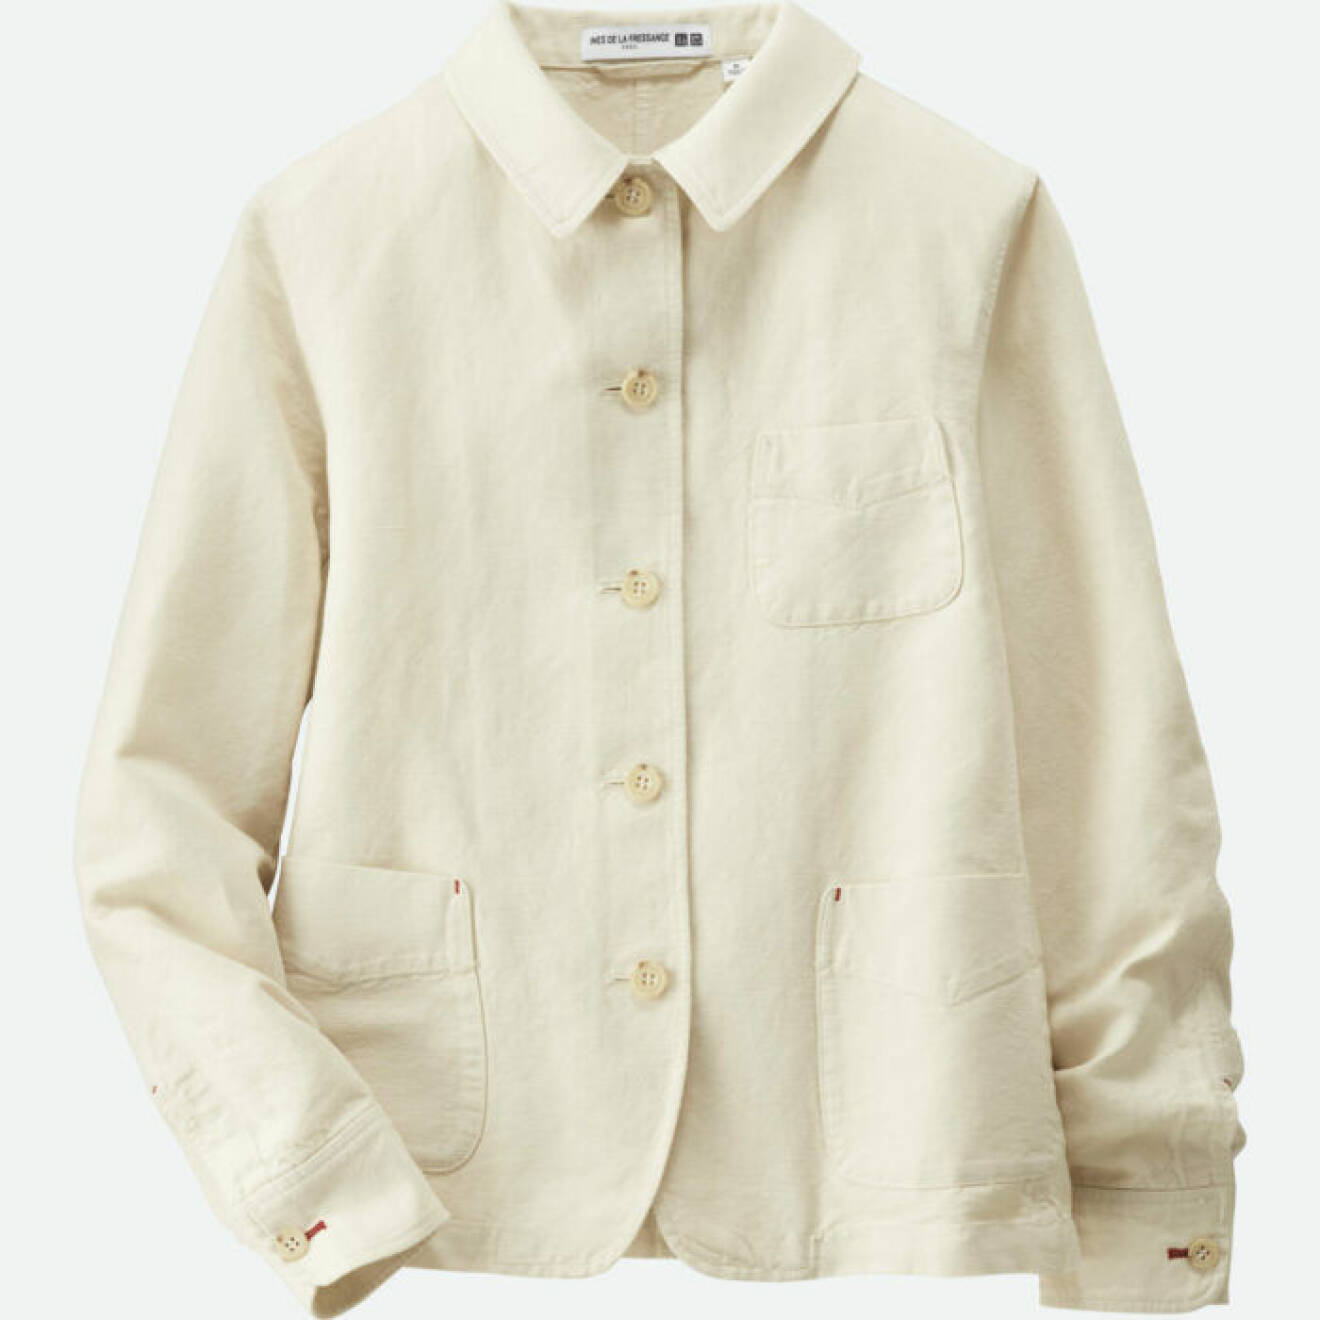 Vit jacka i linne och bomull i skjortmodell med fickor